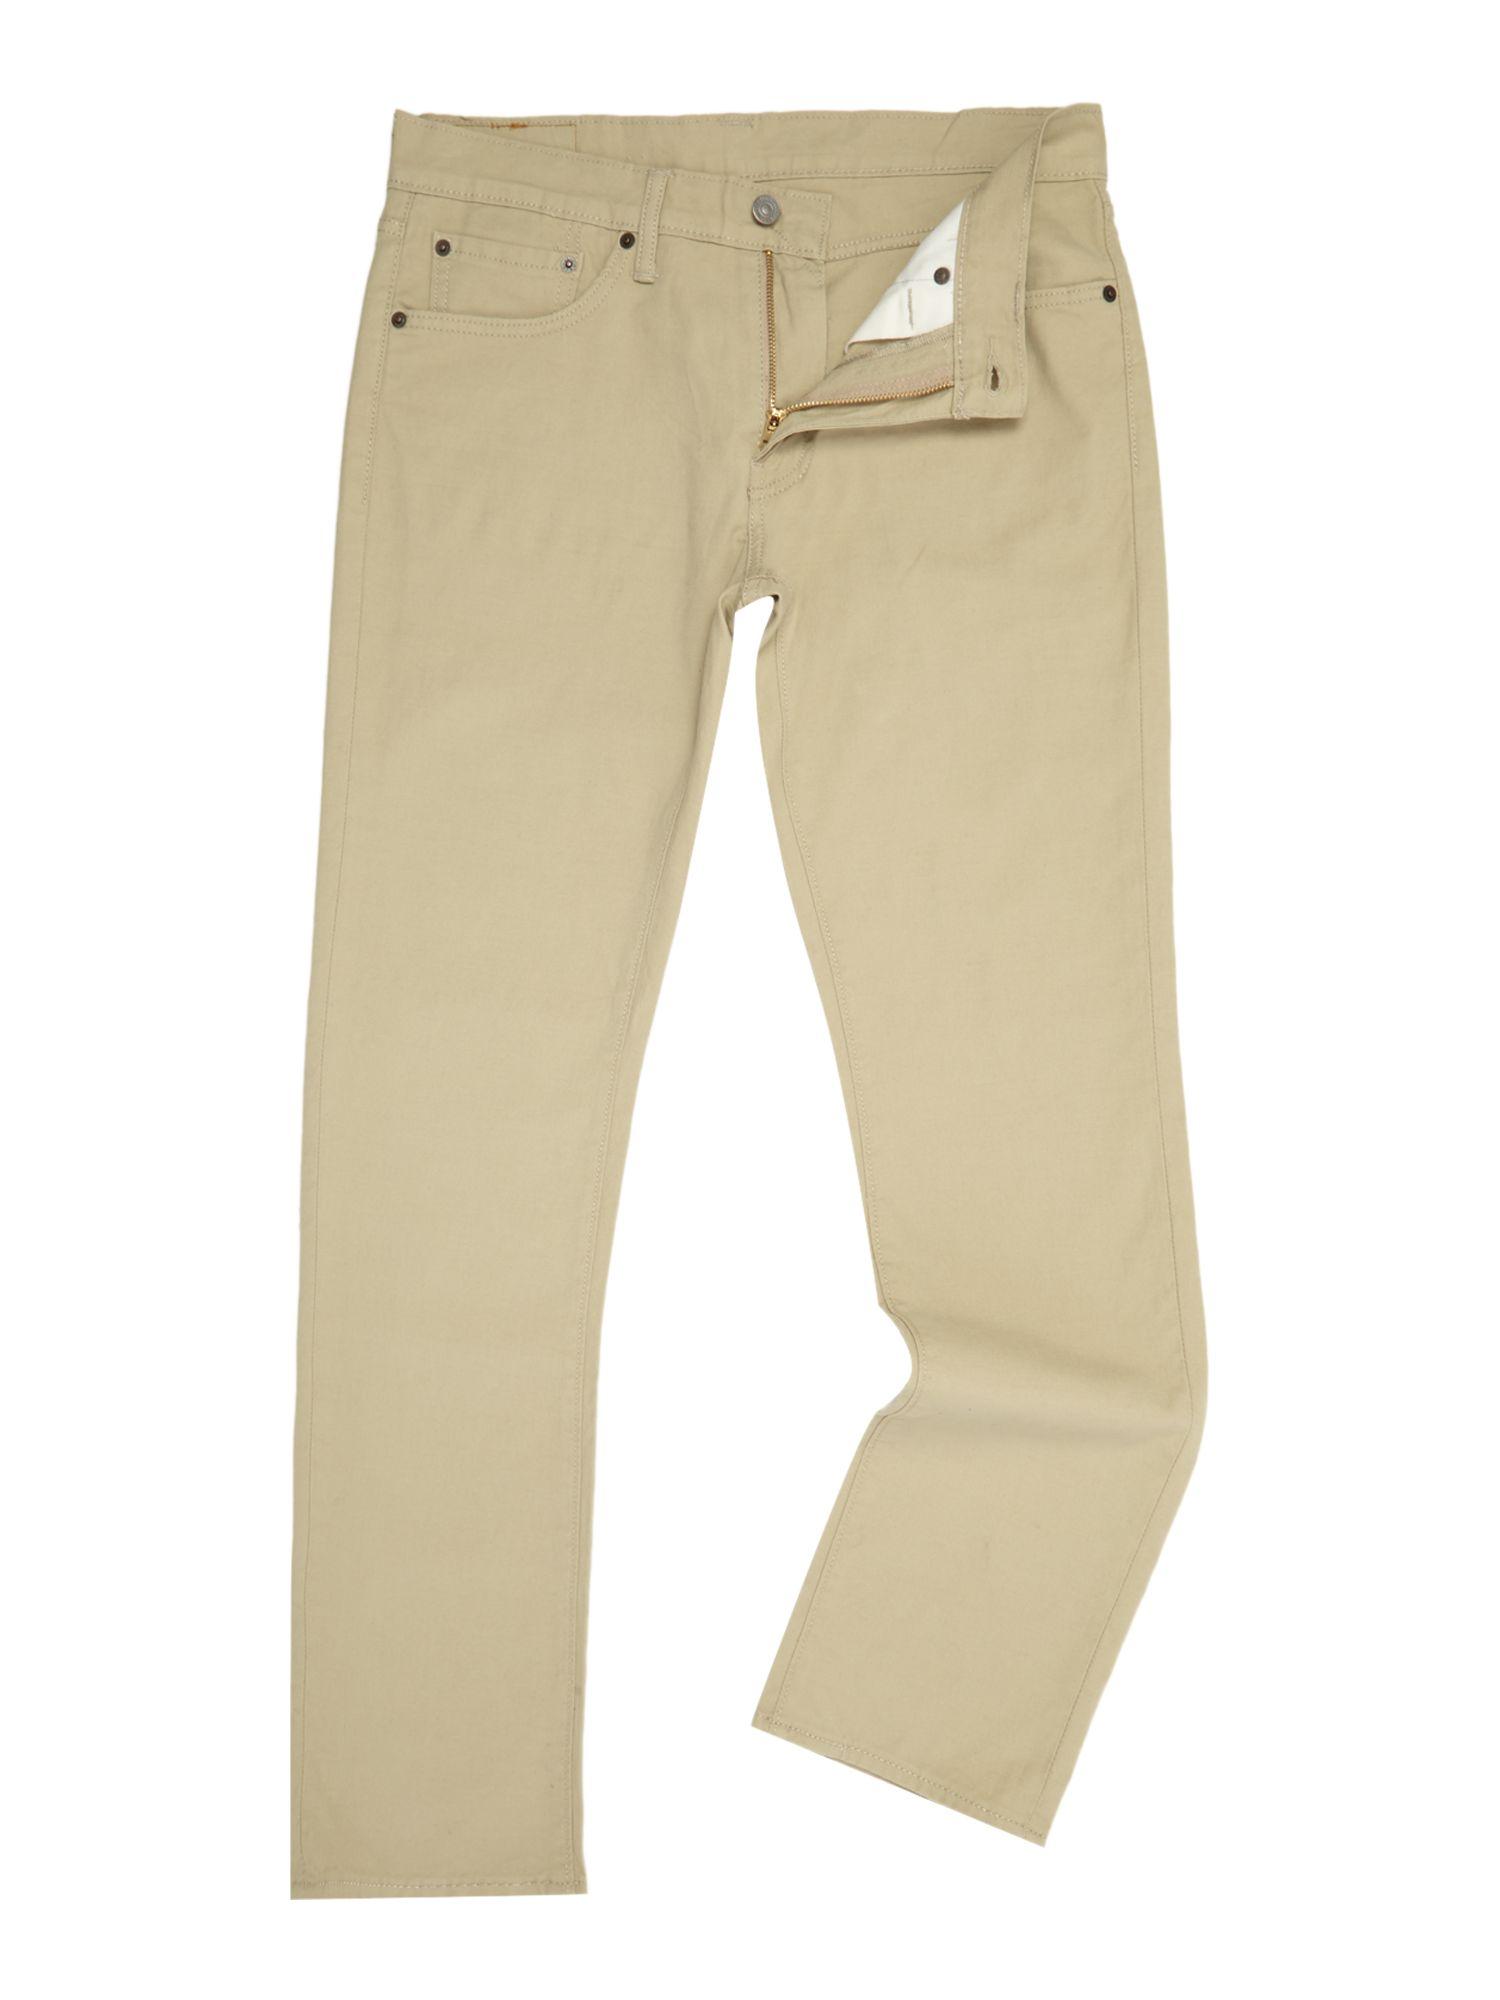 Levi's Denim 511 Slim Fit Beige Jeans in Natural for Men - Lyst